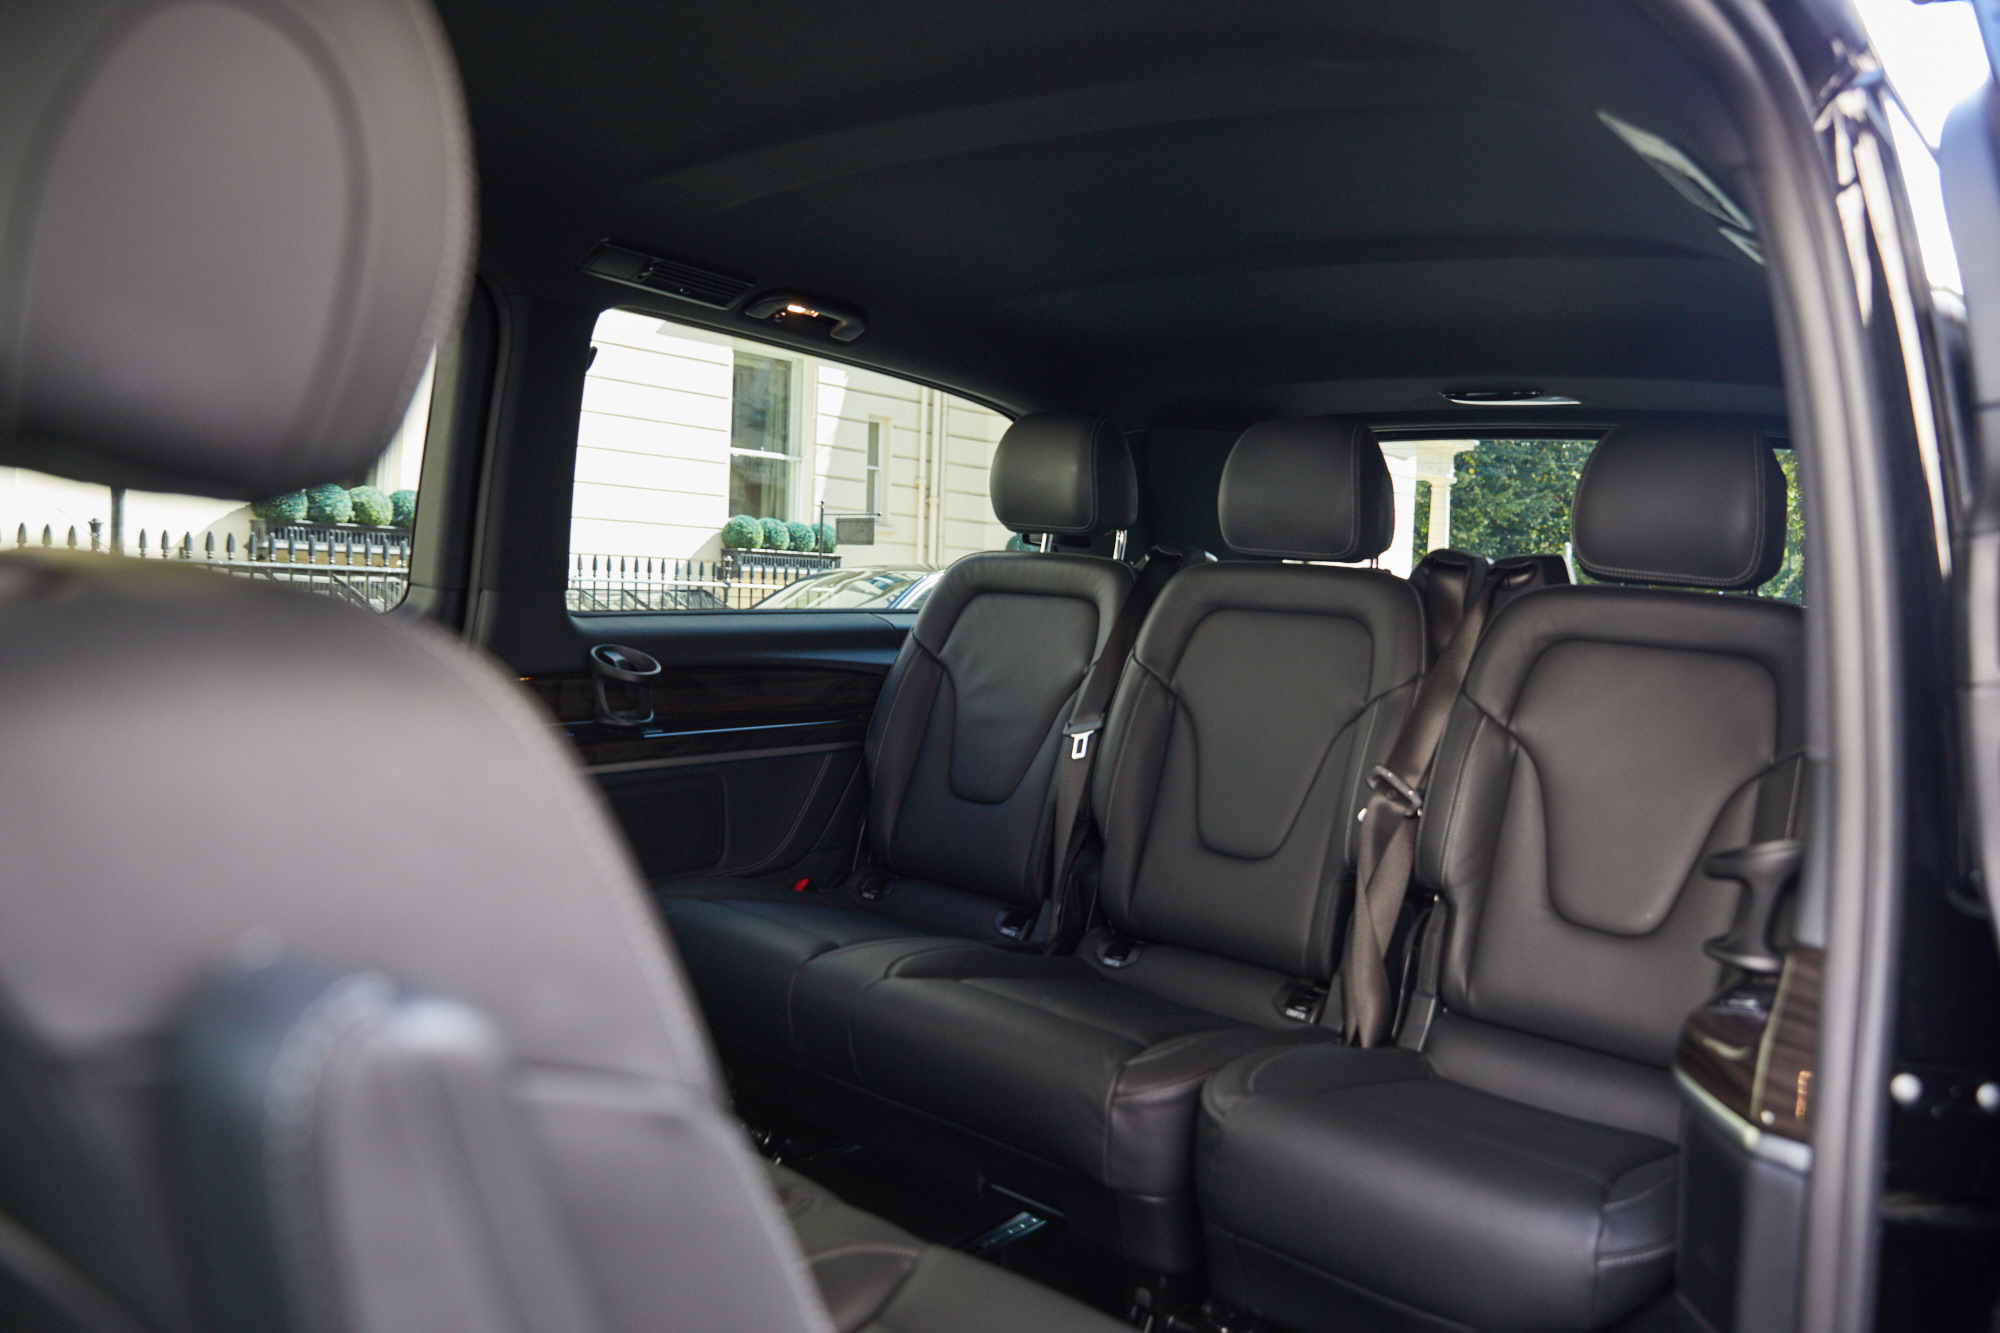 Mercedes Benz V class inside seating arrangement